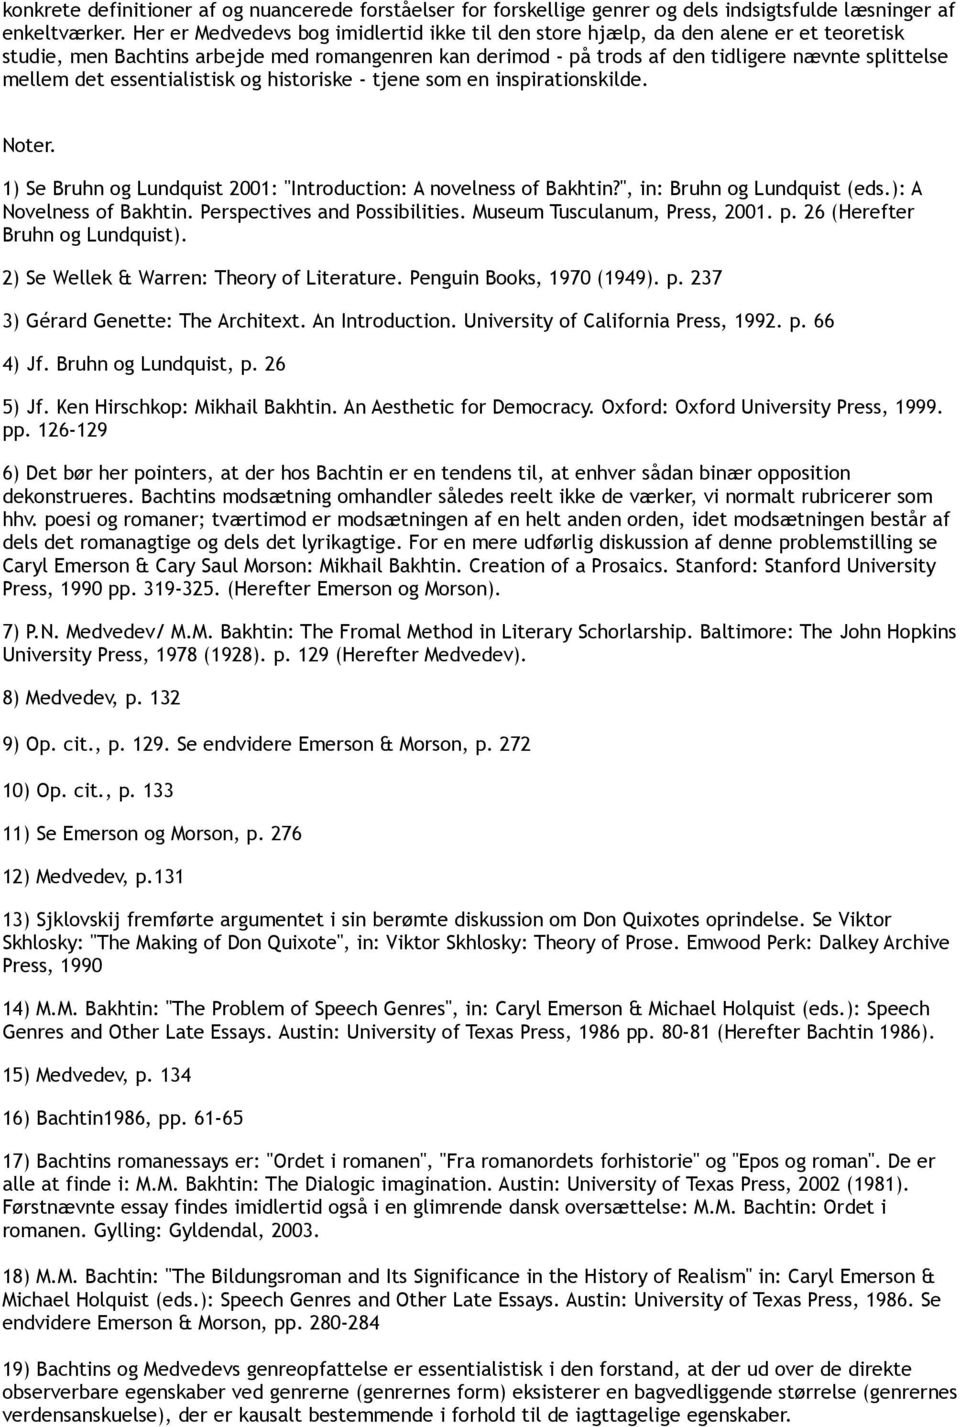 det essentialistisk og historiske - tjene som en inspirationskilde. Noter. 1) Se Bruhn og Lundquist 2001: "Introduction: A novelness of Bakhtin?", in: Bruhn og Lundquist (eds.